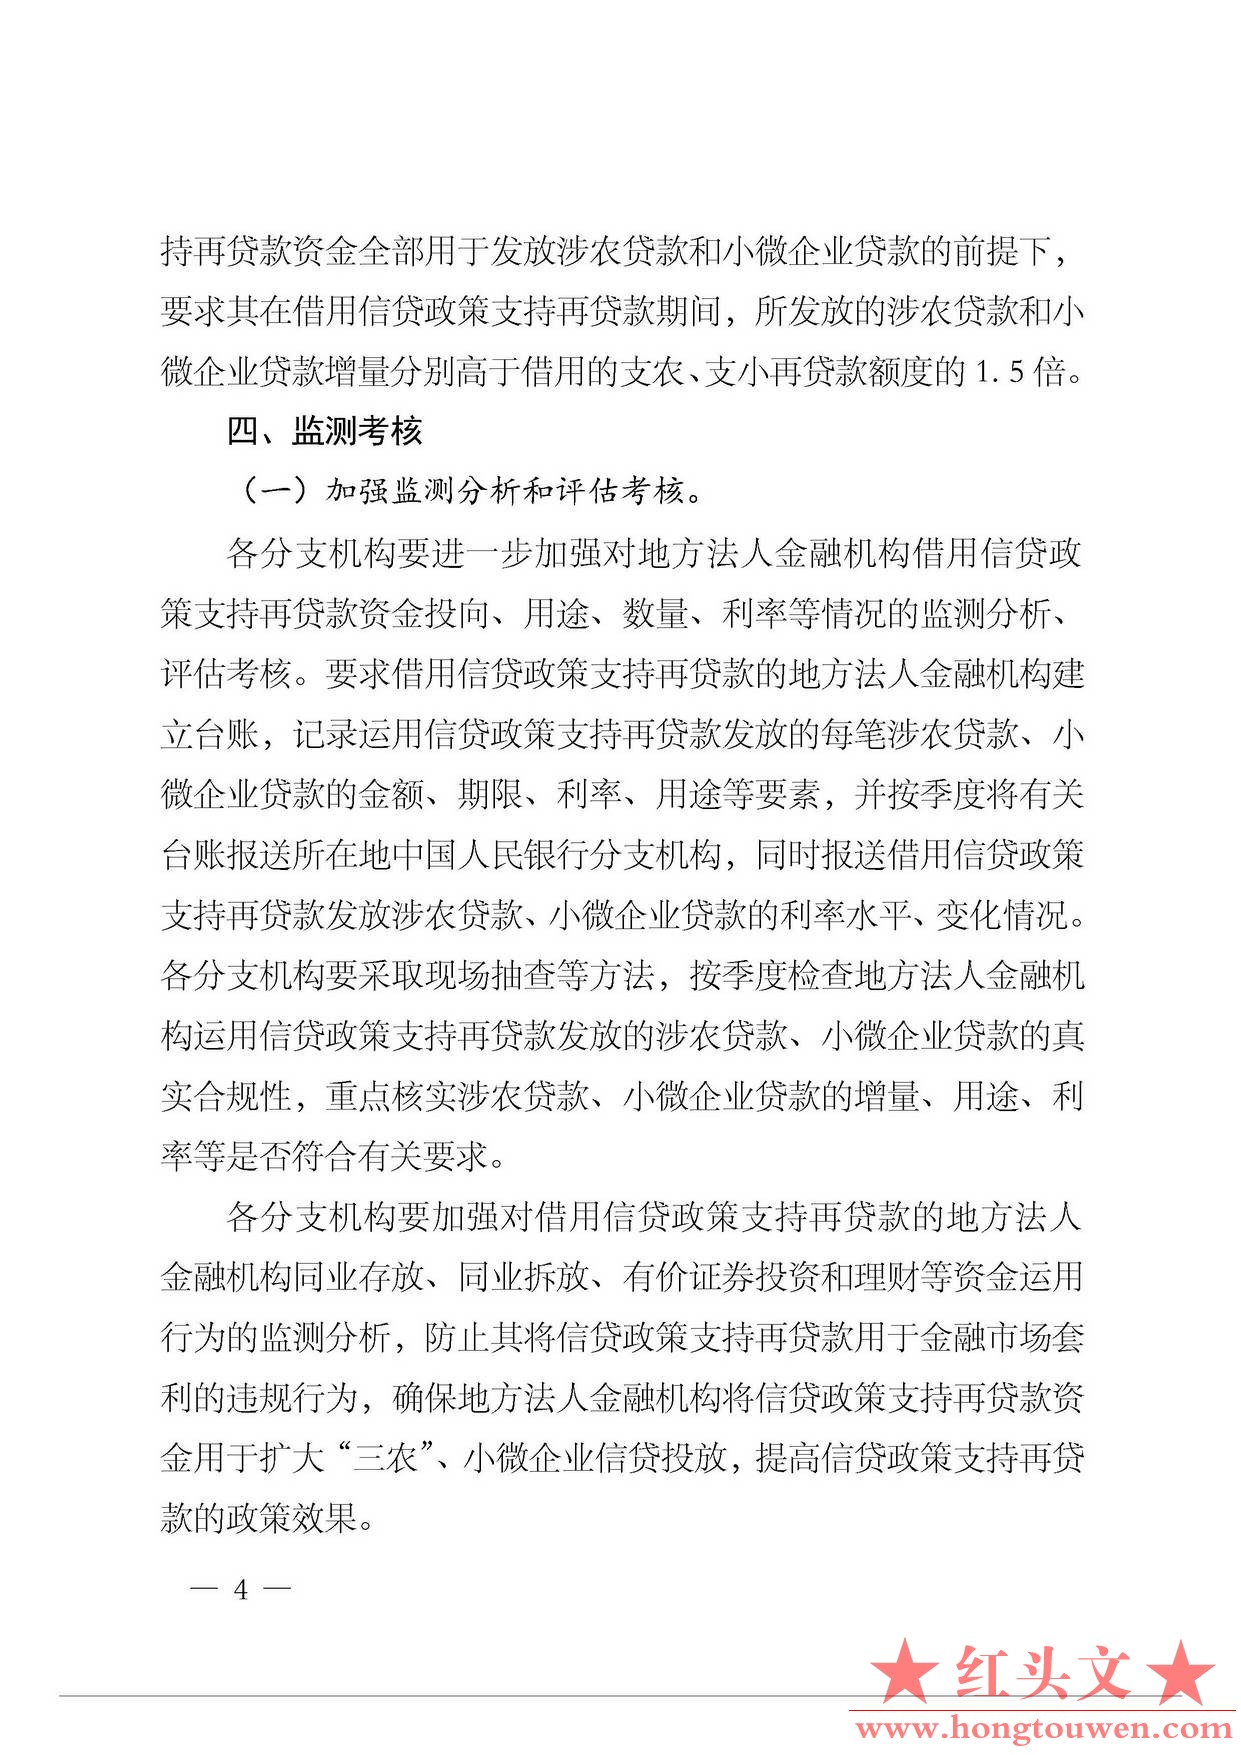 银发{2014]396号-中国人民银行关于完善信贷政策支持再贷款管理支持扩大三农小微企业信.jpg